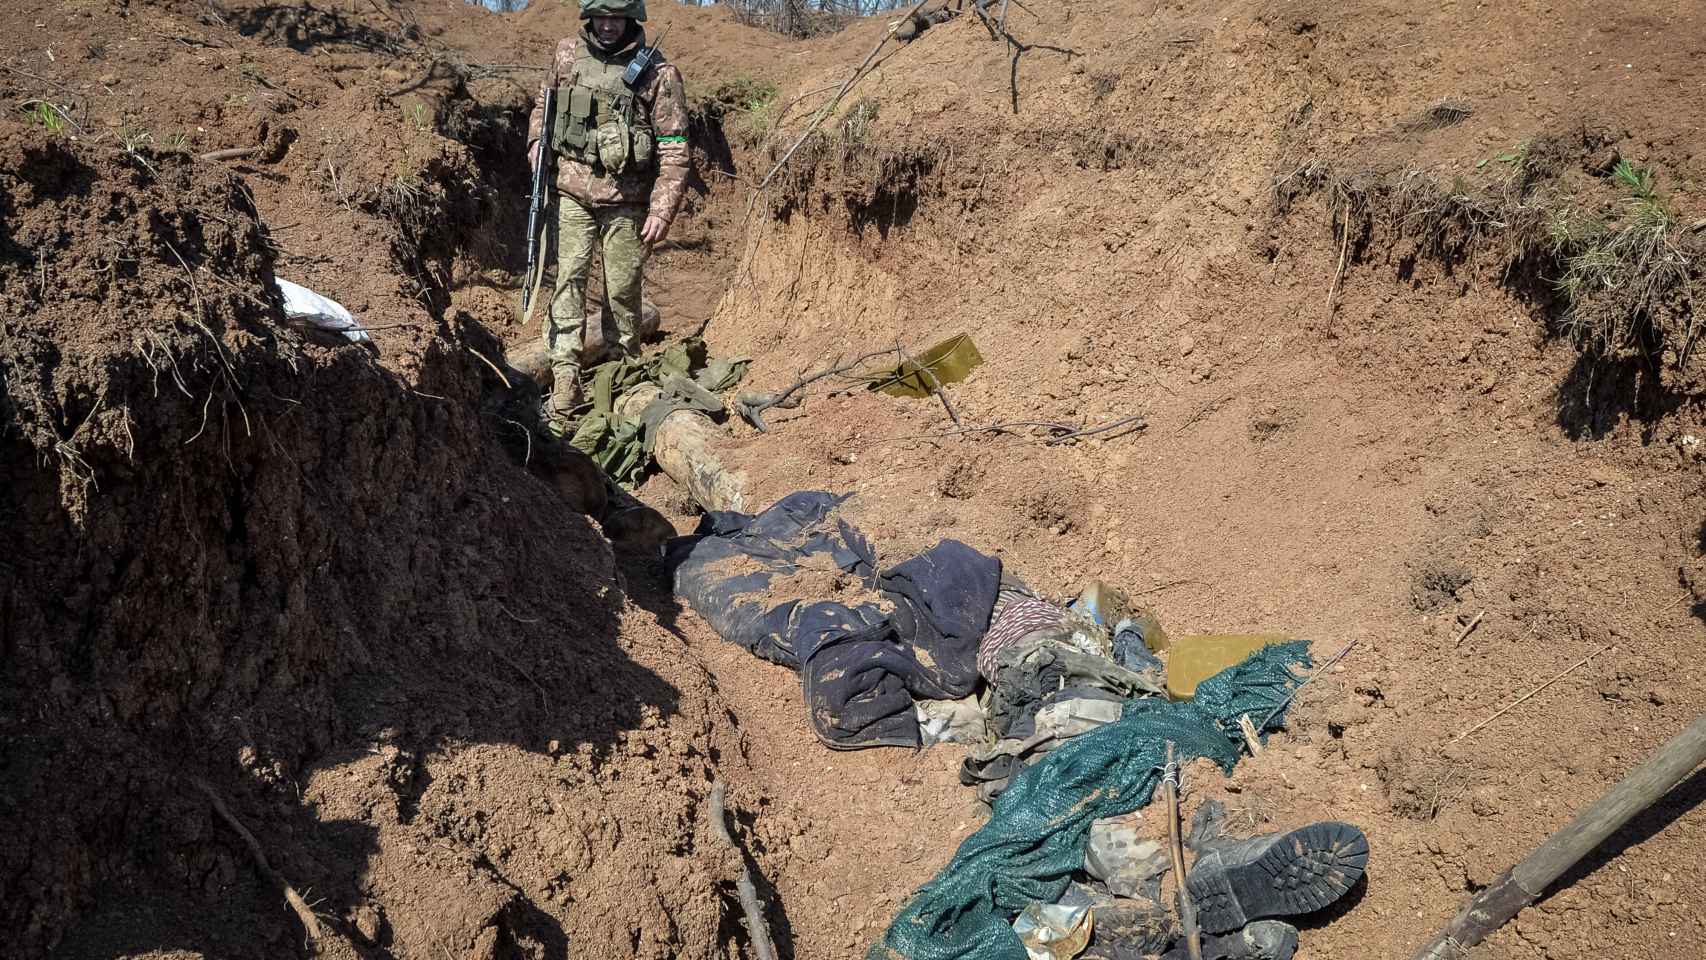 Un miembro del servicio militar ucraniano mira el cuerpo de un soldado ruso asesinado que yace en una trinchera en una posición en la línea del frente, mientras continúa el ataque de Rusia contra Ucrania, cerca de la ciudad de Bakhmut, Ucrania.